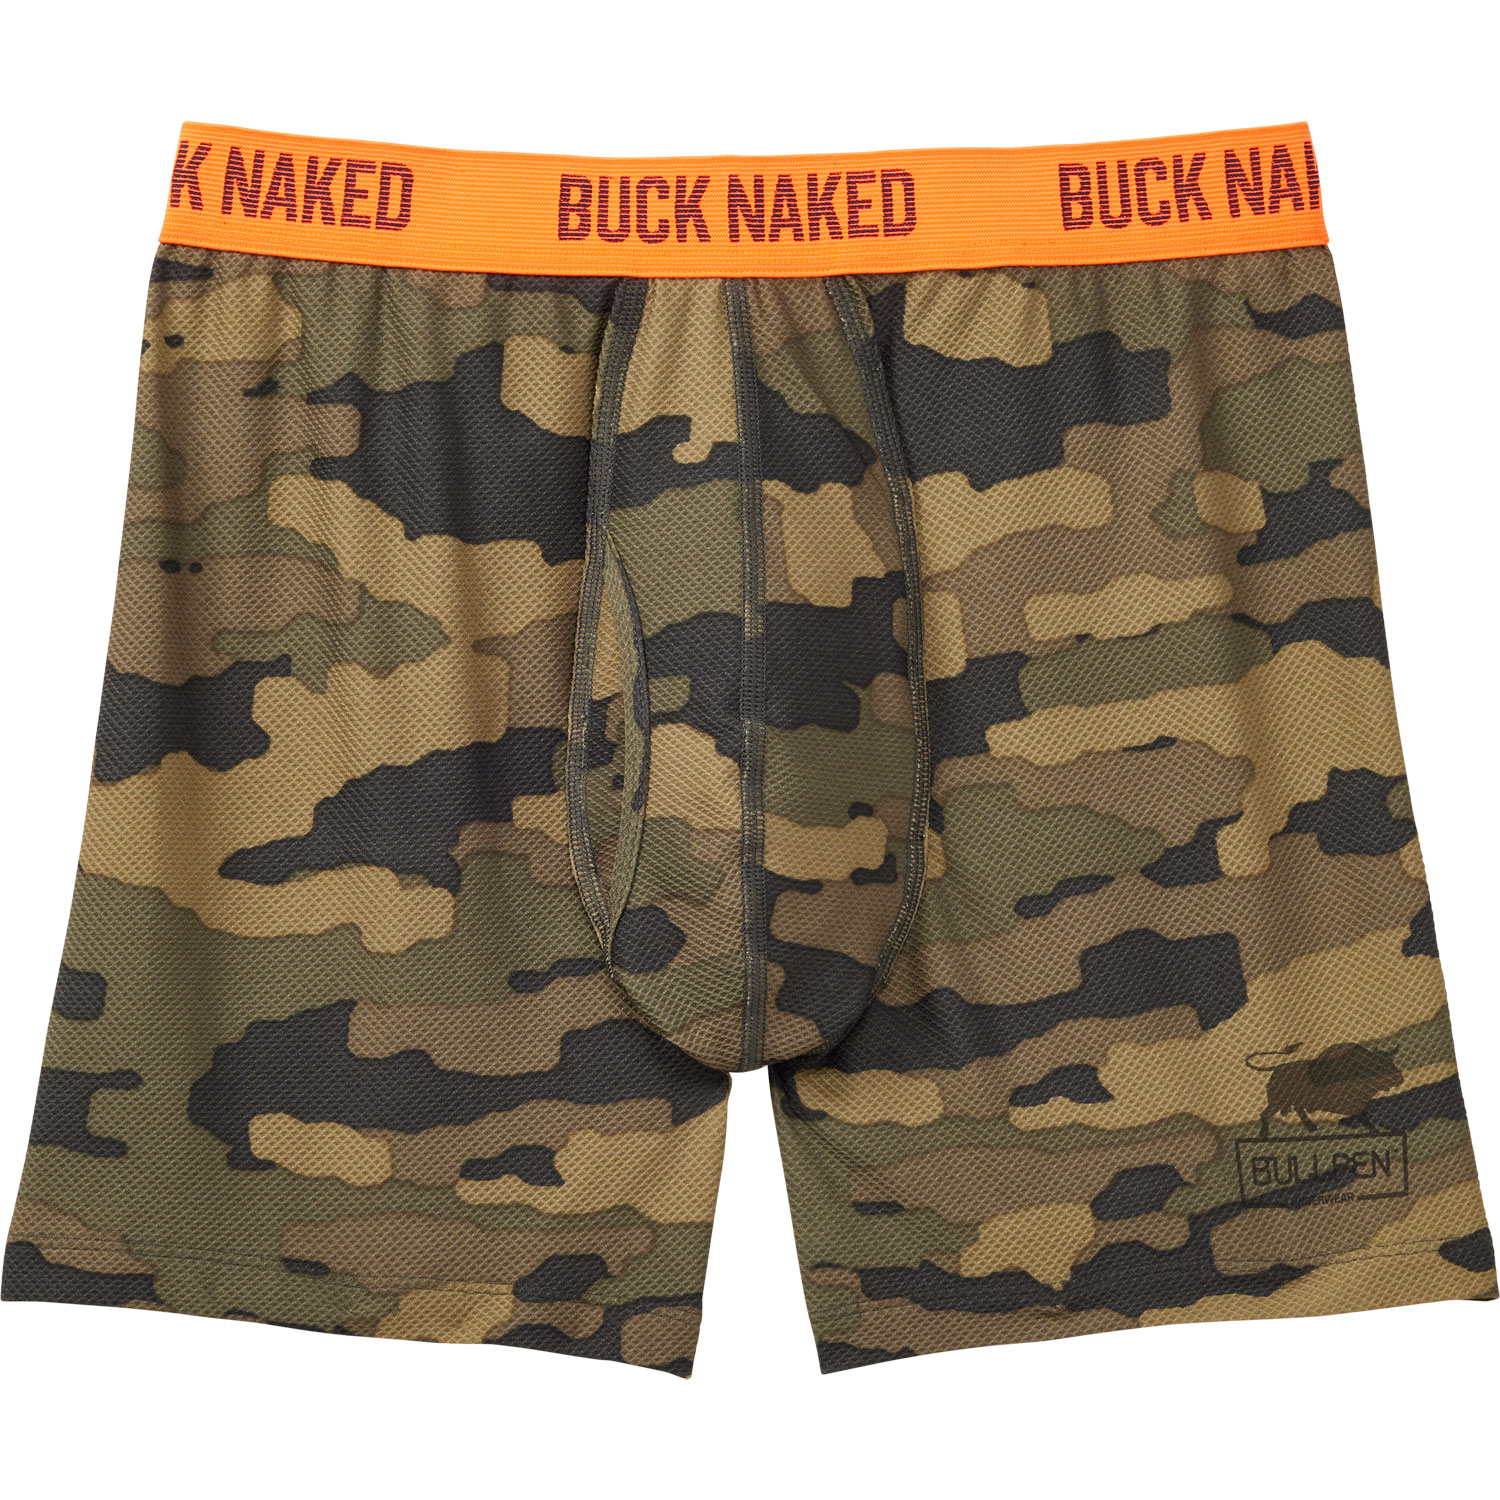 Men's Buck Naked Bullpen Briefs